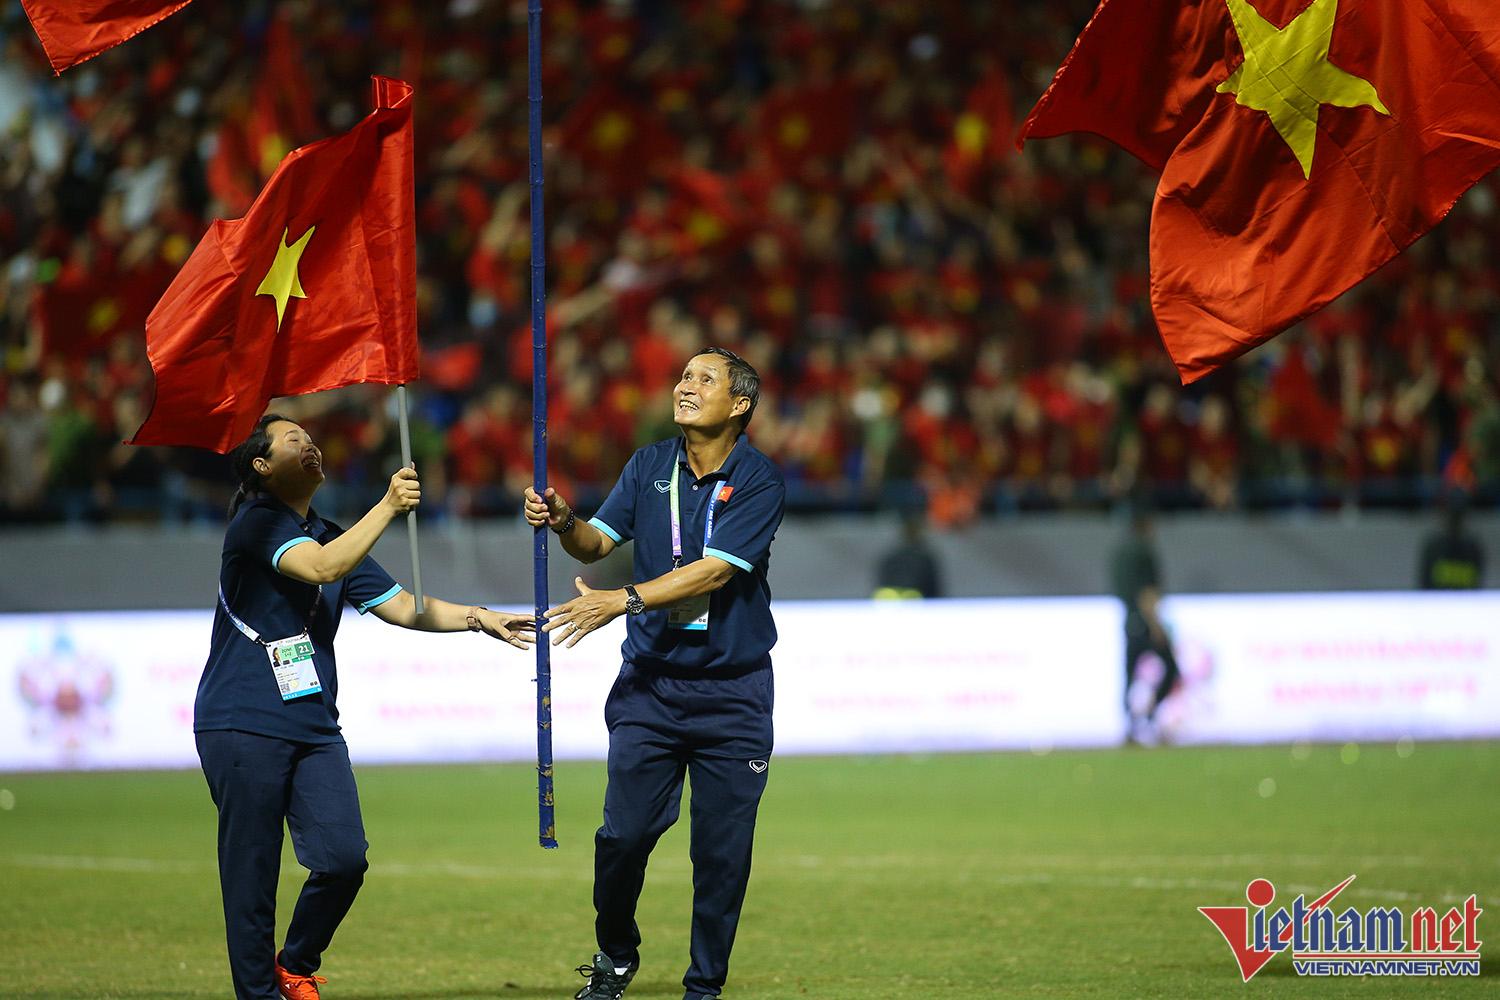 Xúc động hình ảnh cầu thủ nữ Việt Nam cắm cờ Tổ quốc trên bục nhận huy chương - Ảnh 4.